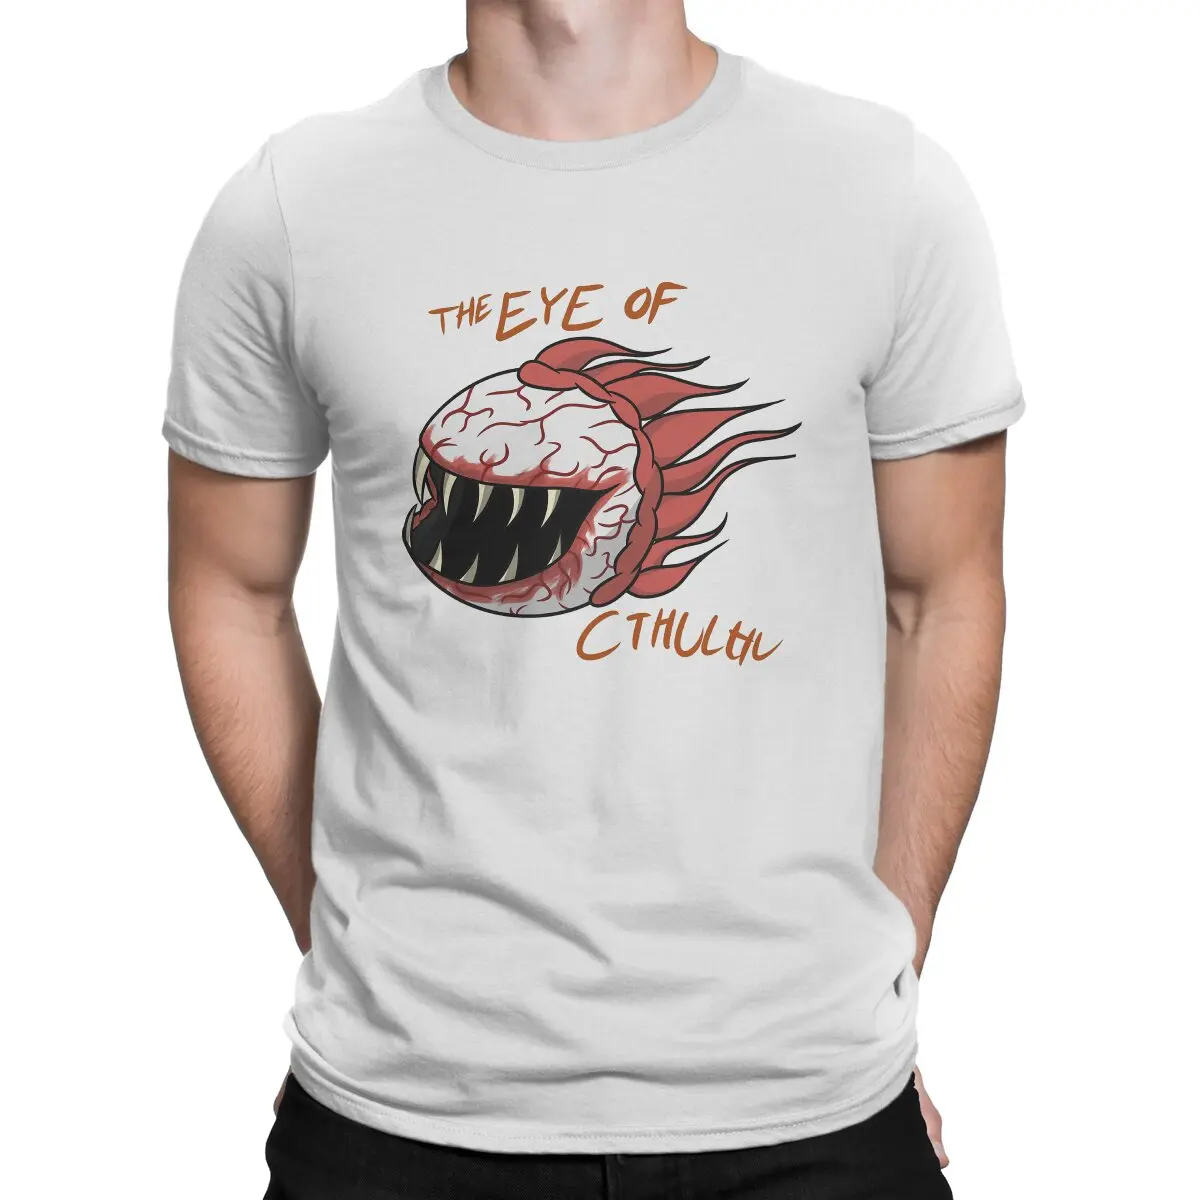 Мужская футболка Terrarias, отличительная футболка Cthulhu, оригинальные толстовки для хипстеров